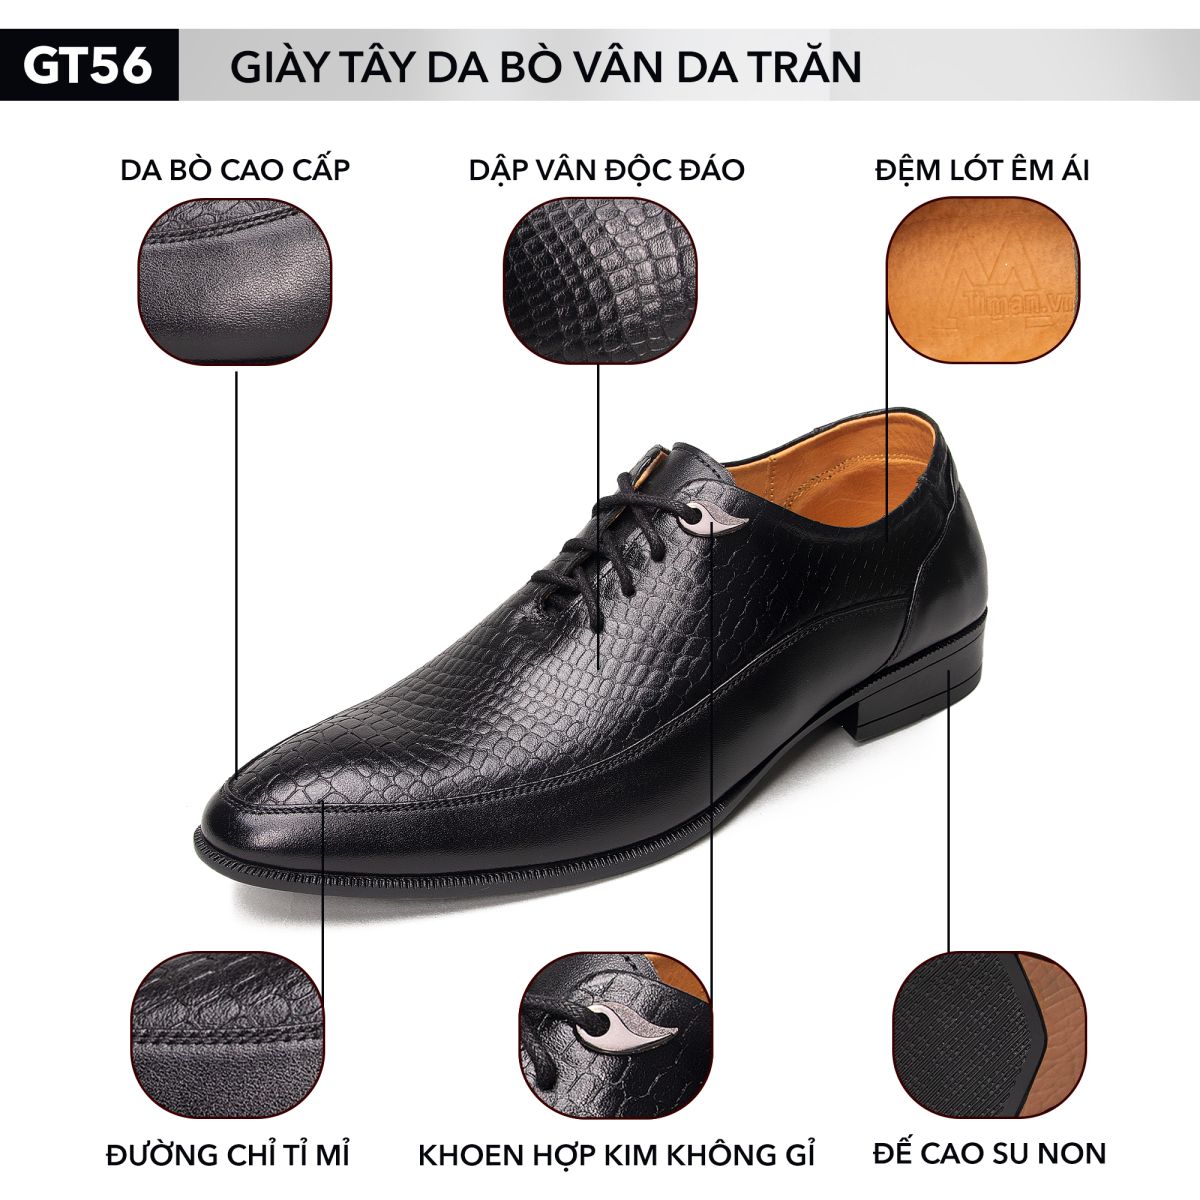 Sự lịch lãm và phong cách của giày tây nam GT56 